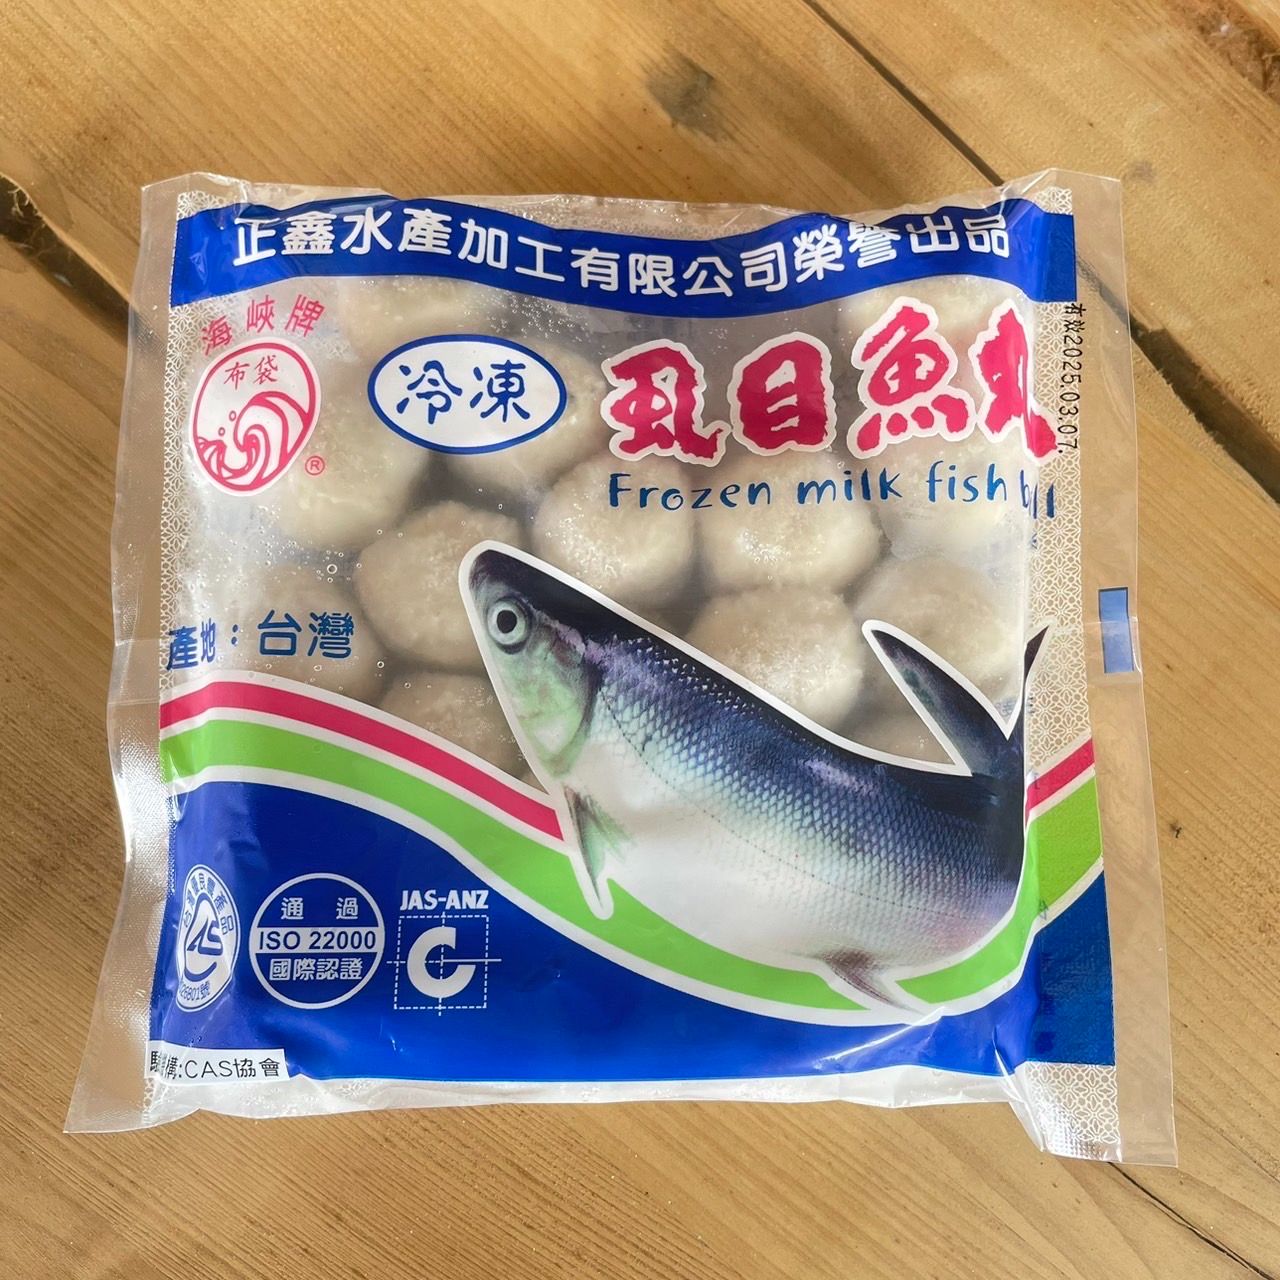 完全無添加修飾澱粉的虱目魚丸。
<br />保證不添加硼砂、防腐劑、漂白劑。
<br />符合國家衛生法規。